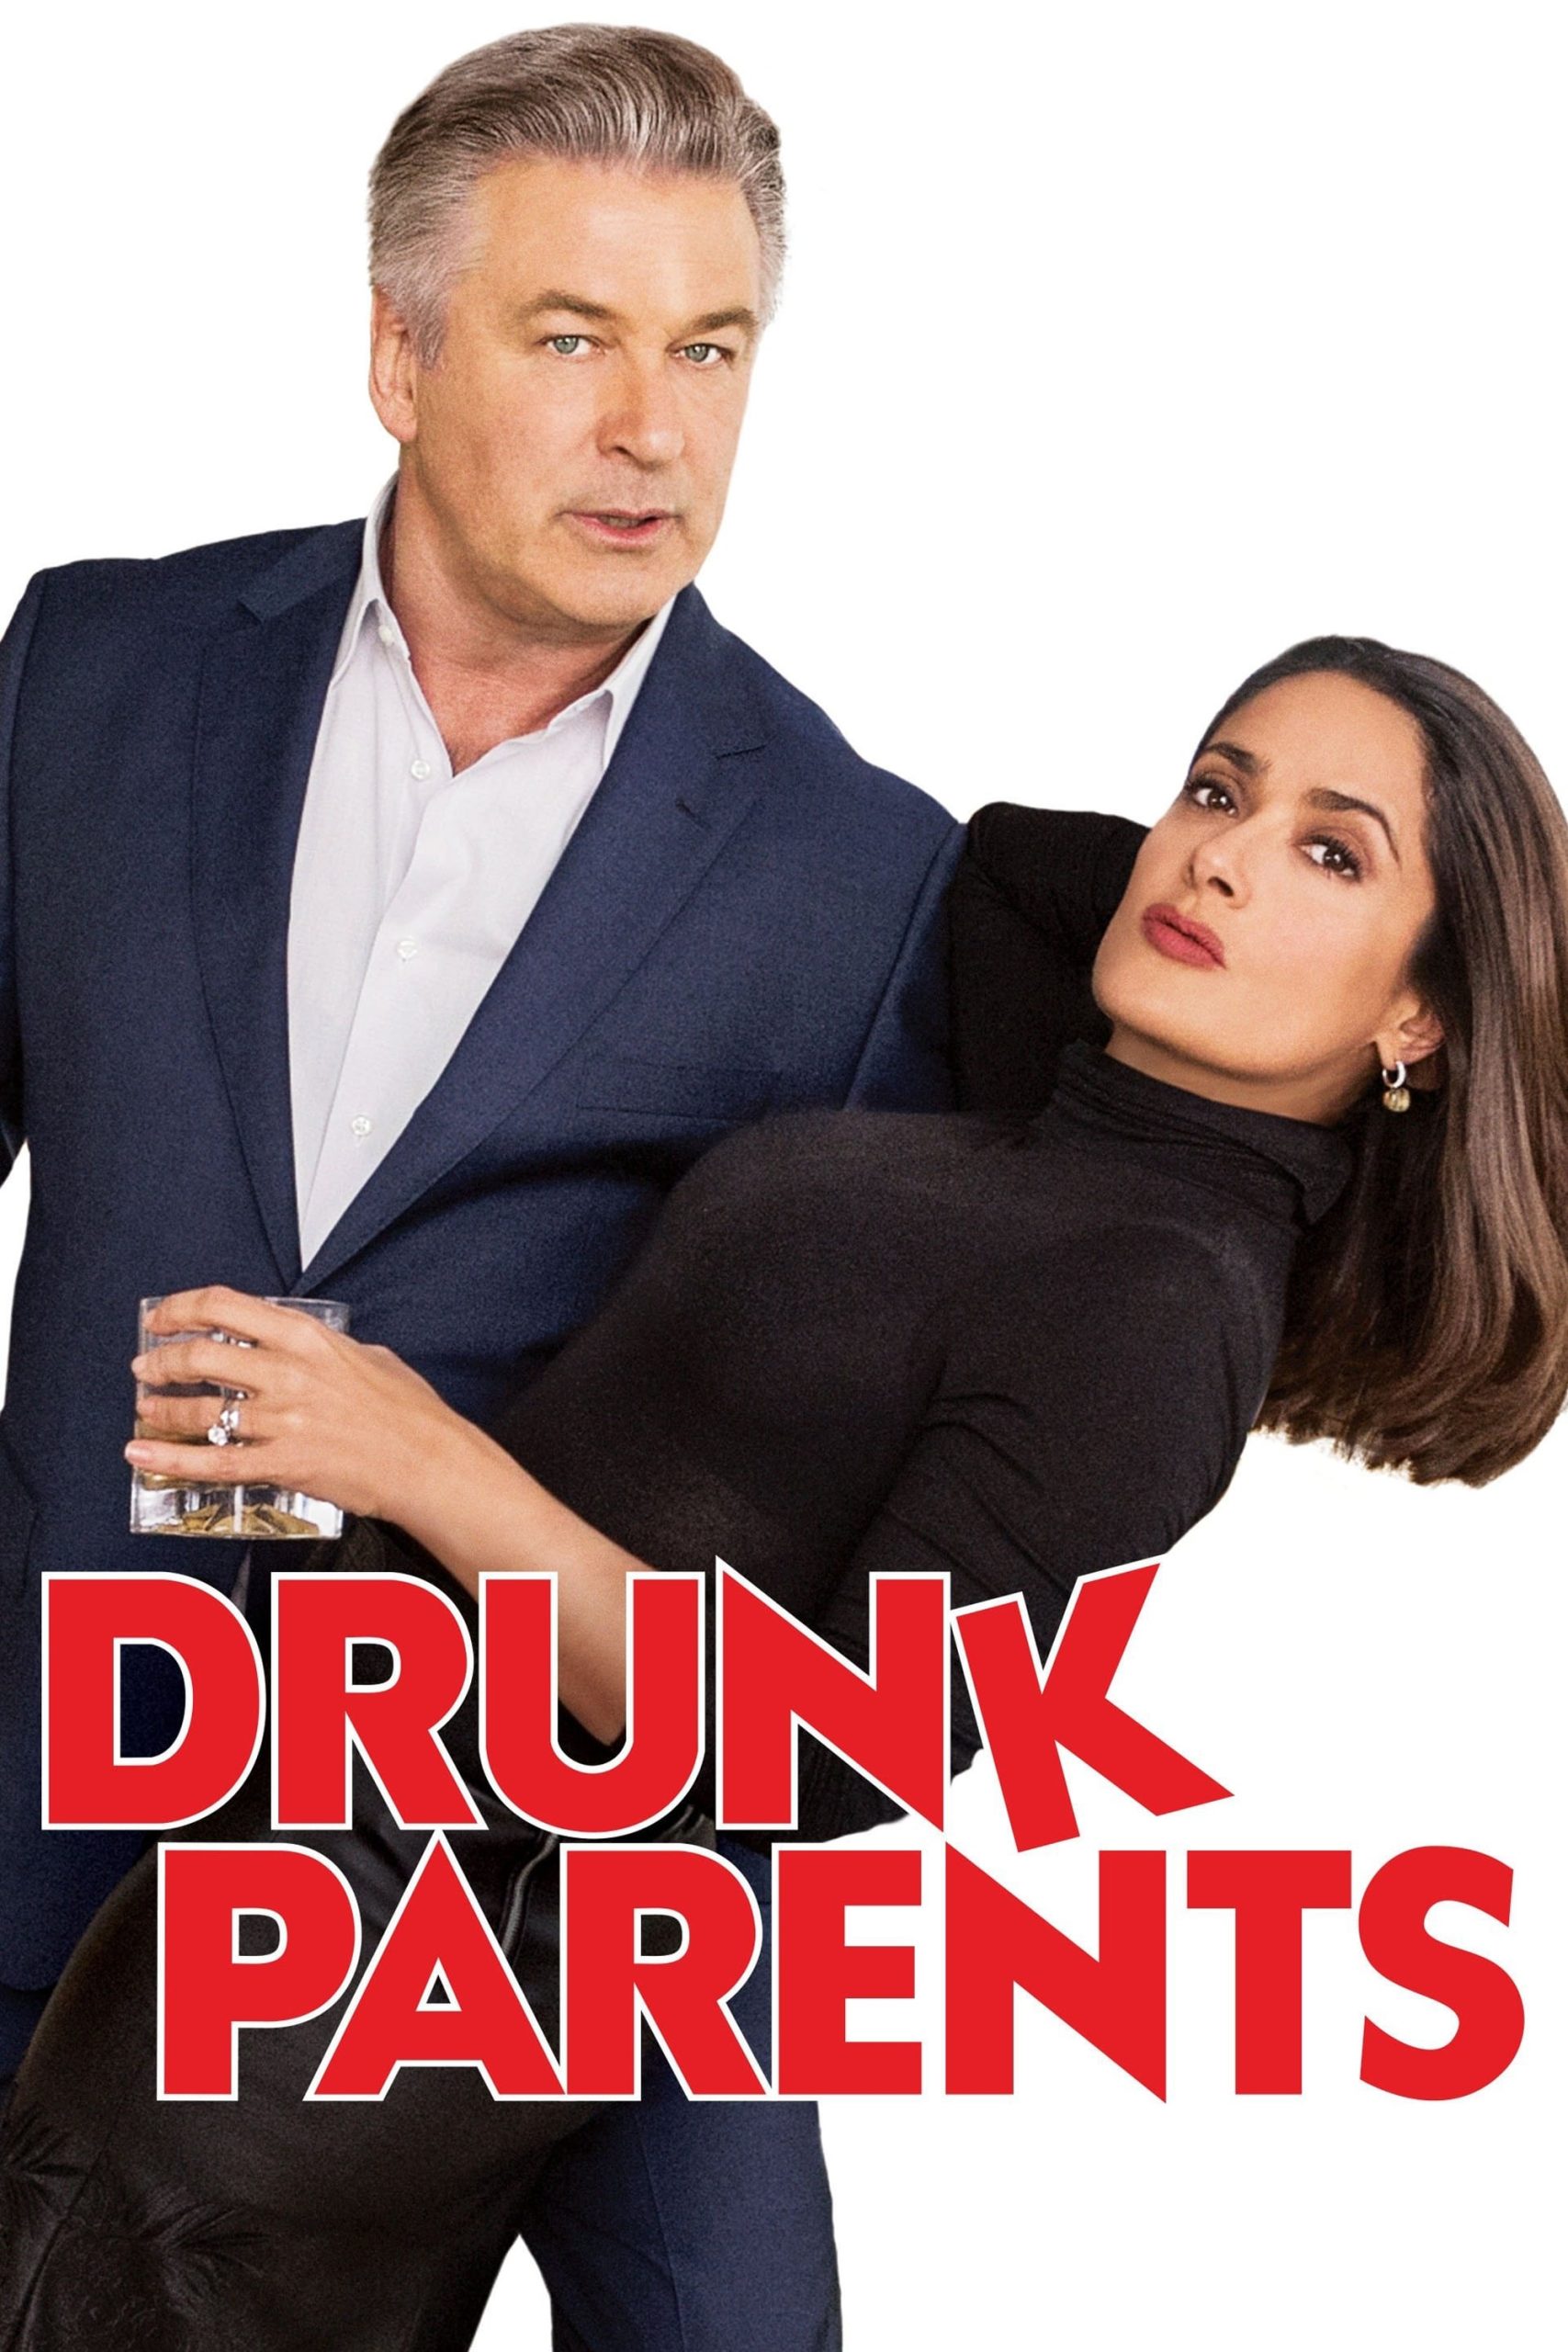 ดูหนังออนไลน์ฟรี Drunk Parents ผู้ปกครองสายเมา